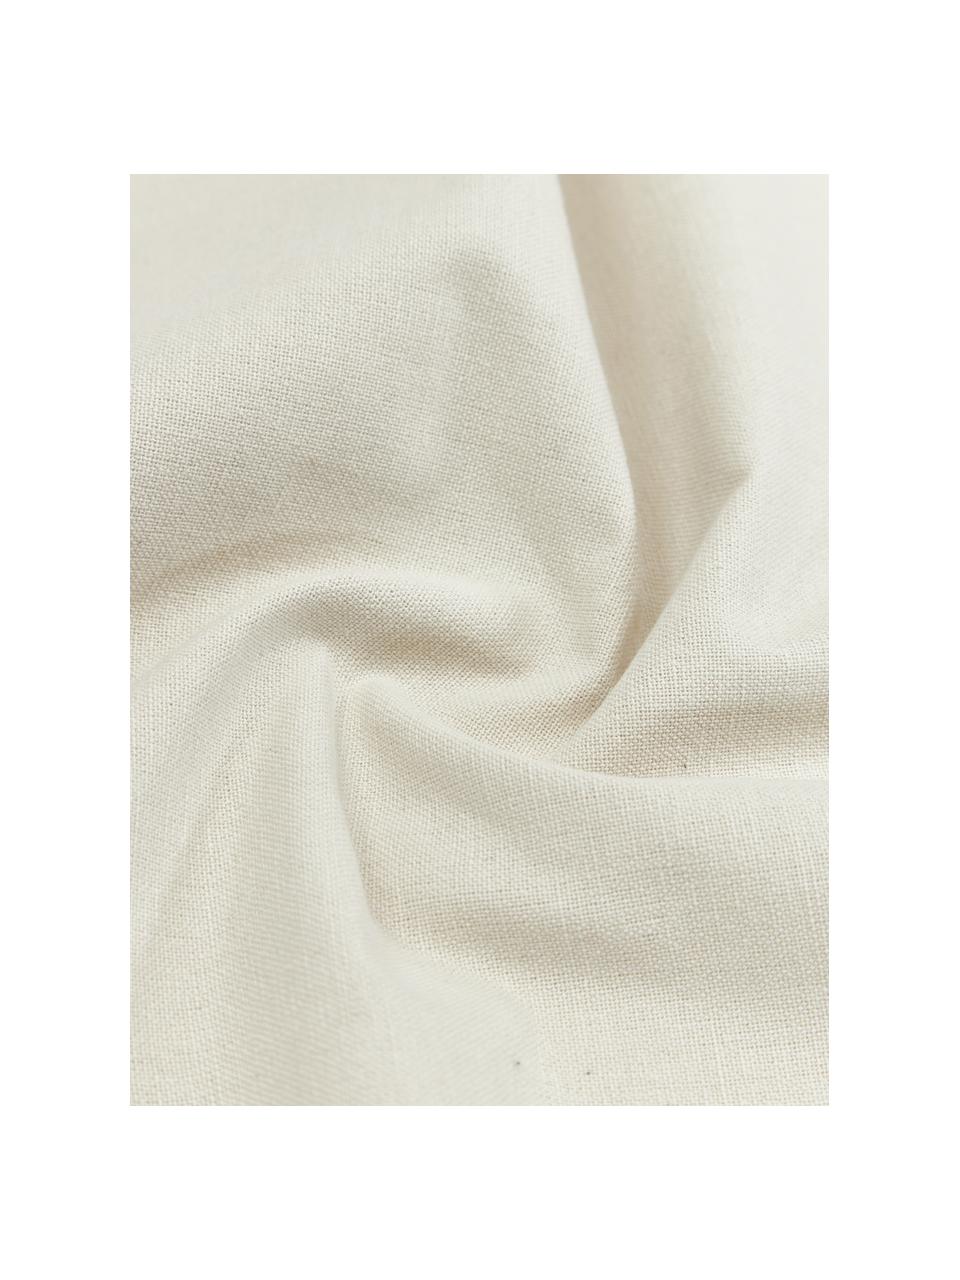 Tovaglia in cotone bianco crema Organic, 100% cotone, Bianco crema, rosso, Per 6-10 persone (Larg. 140 x Lung. 250 cm)